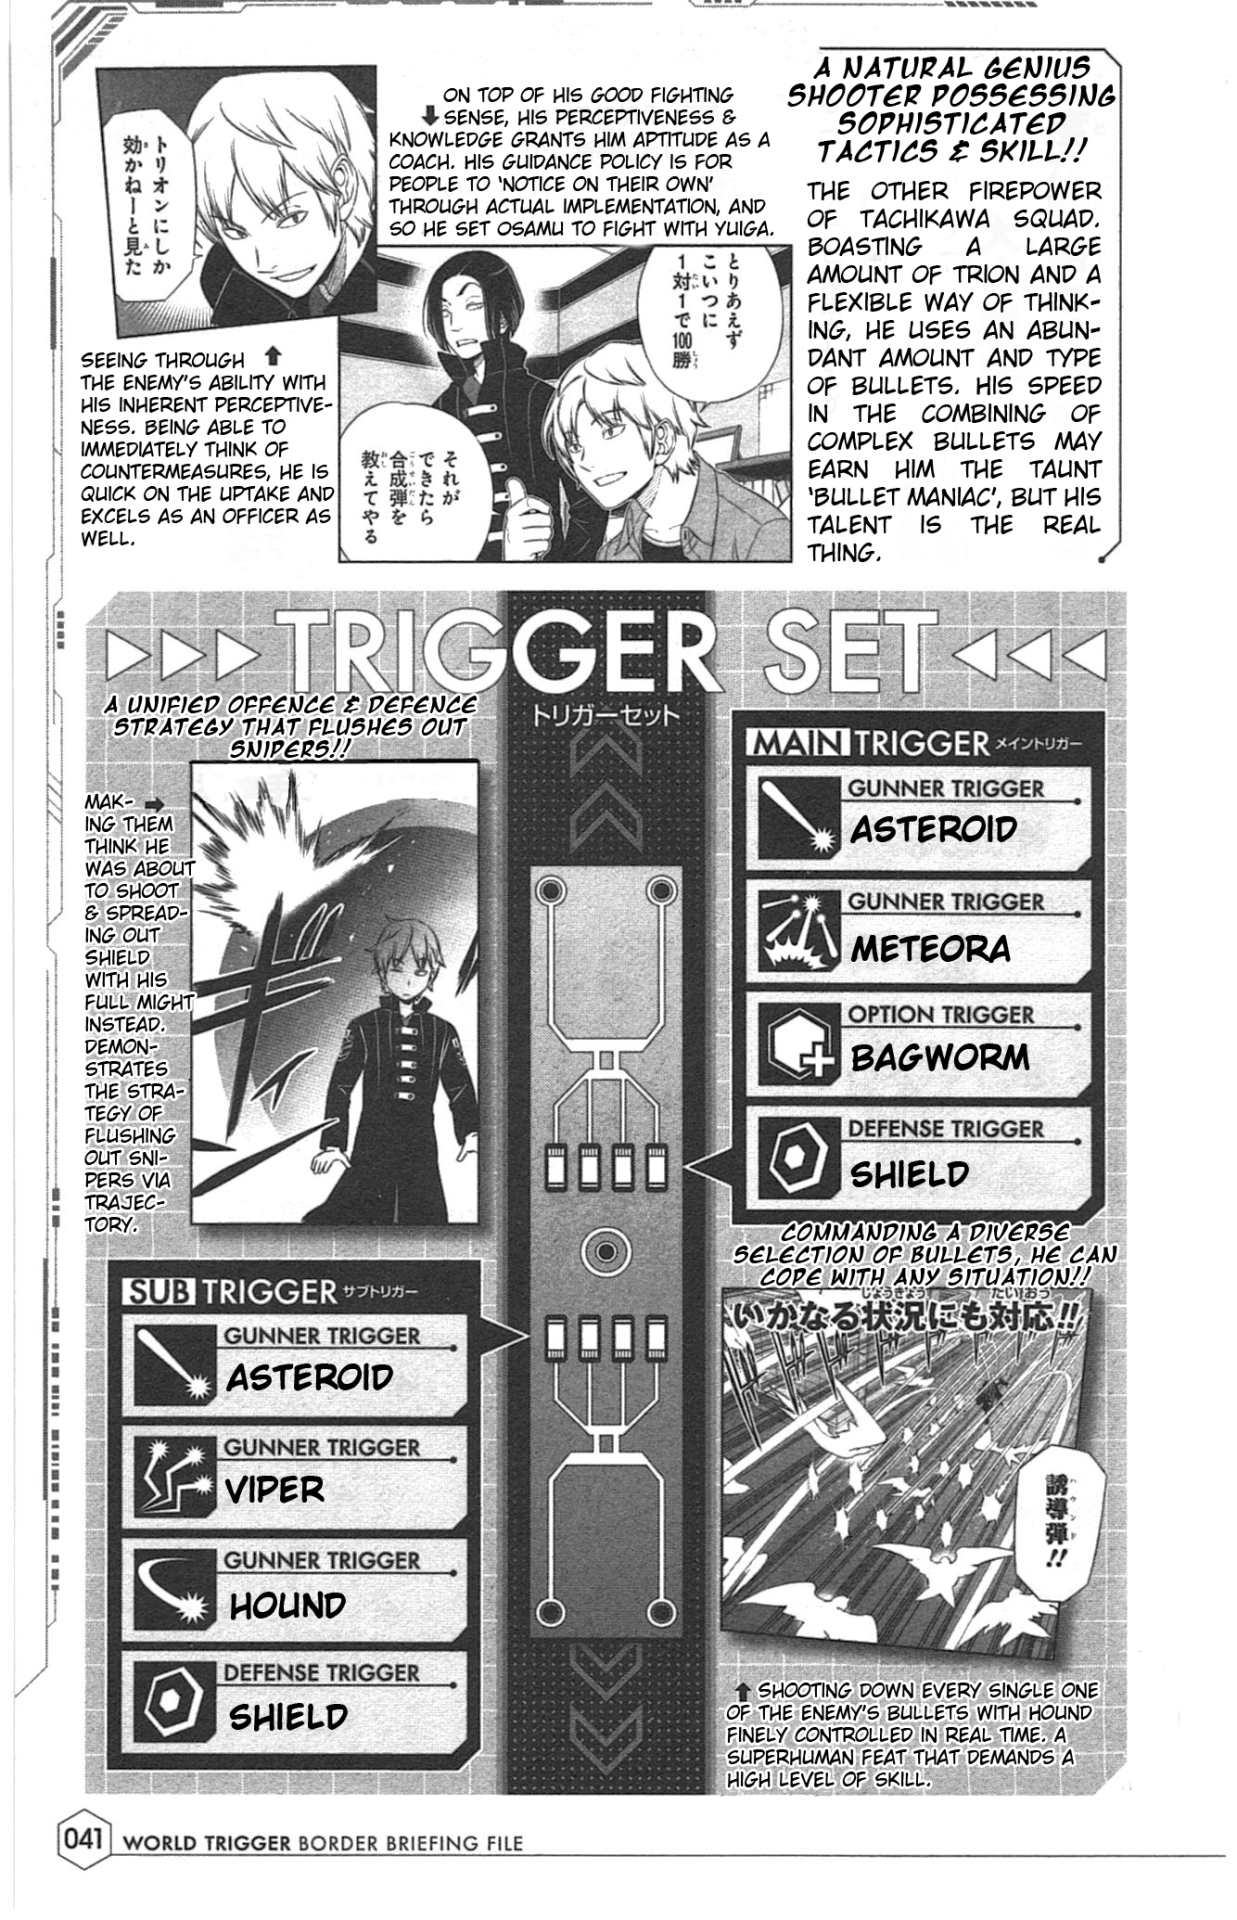 ちっぽけな僕ら — World Trigger BBF Translation - Part 3 of Many